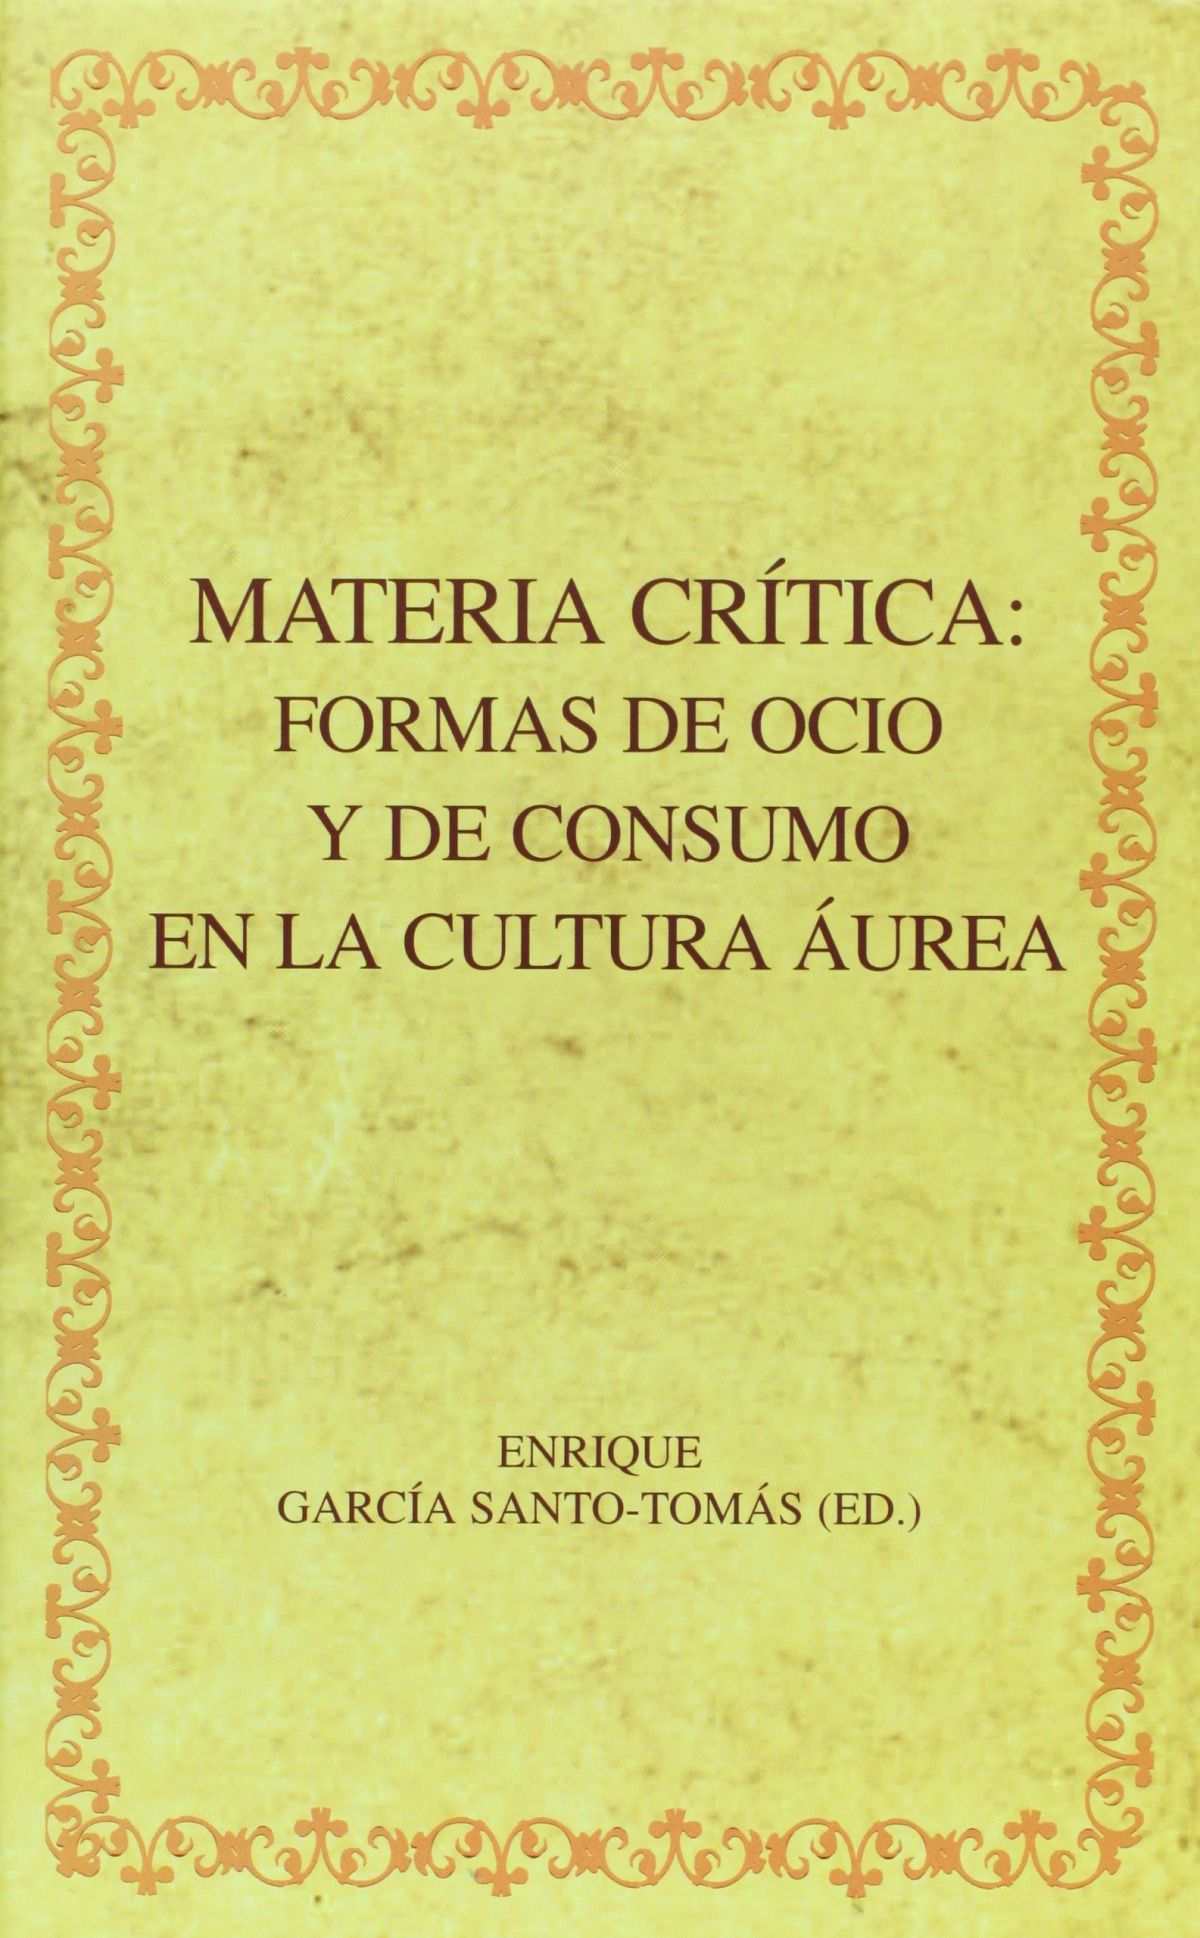 Materia critica.Formas de ocio y consumo cultura aurea - Garcia Santo Tomas, Enrique